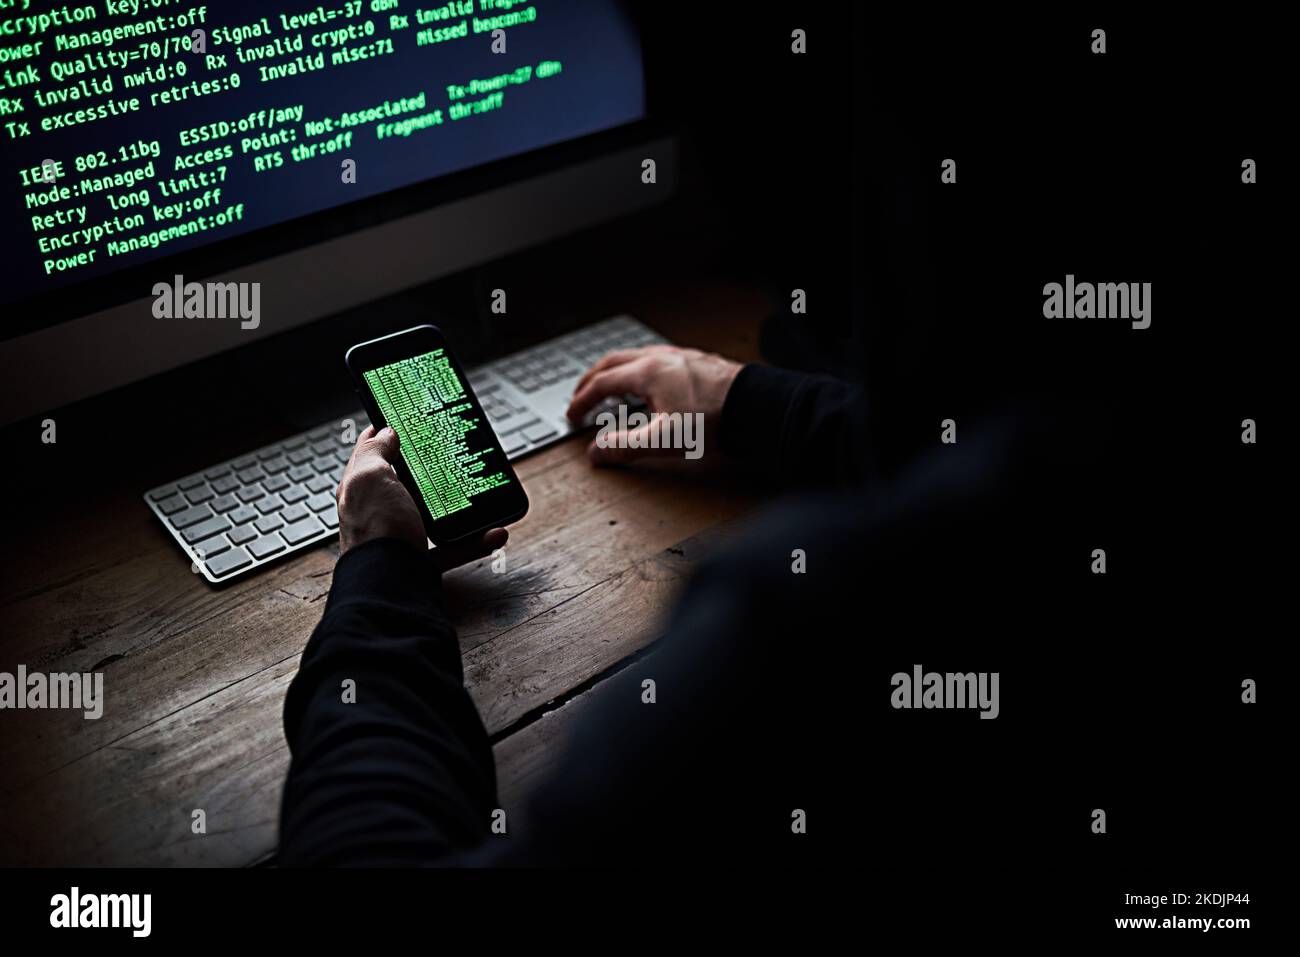 À la recherche de vos mots de passe. Prise de vue en grand angle d'un hacker non identifiable à l'aide d'un ordinateur tard dans la nuit. Banque D'Images